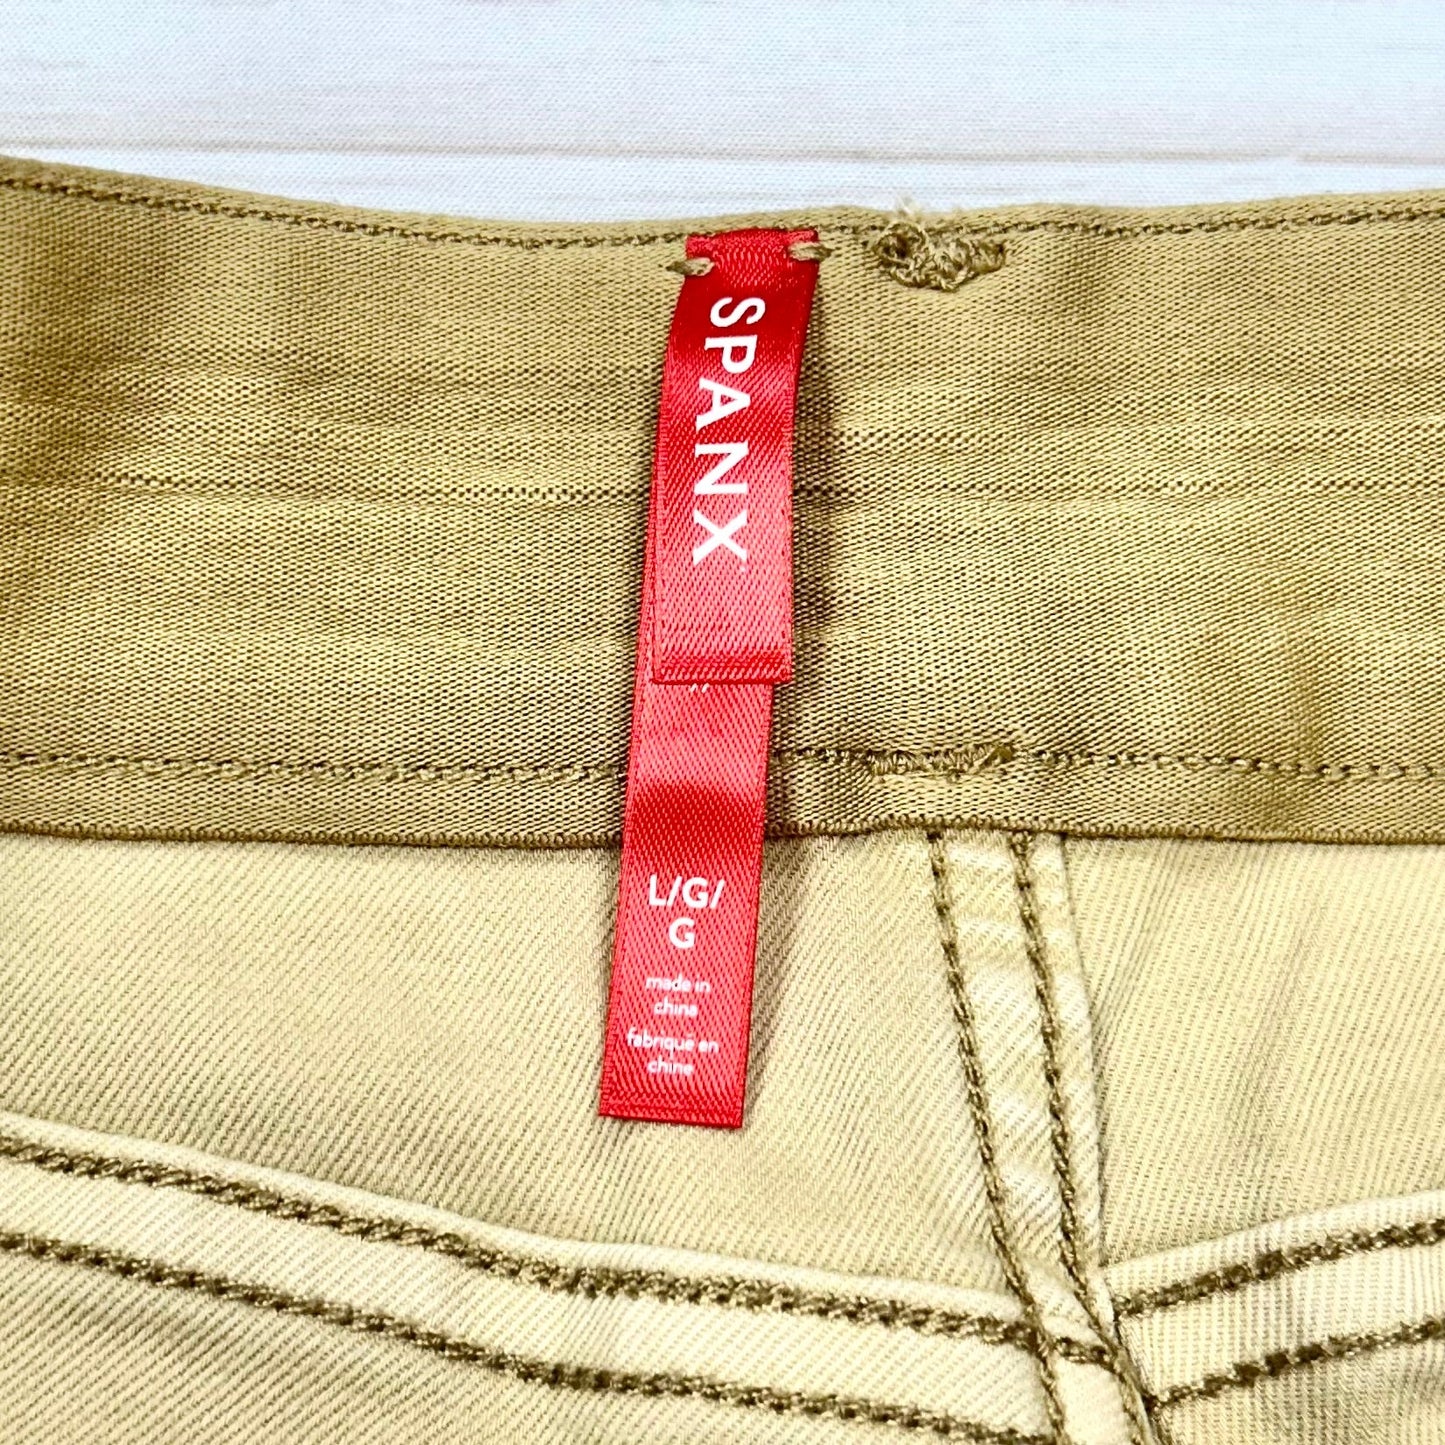 Tan Shorts By Spanx, Size: L